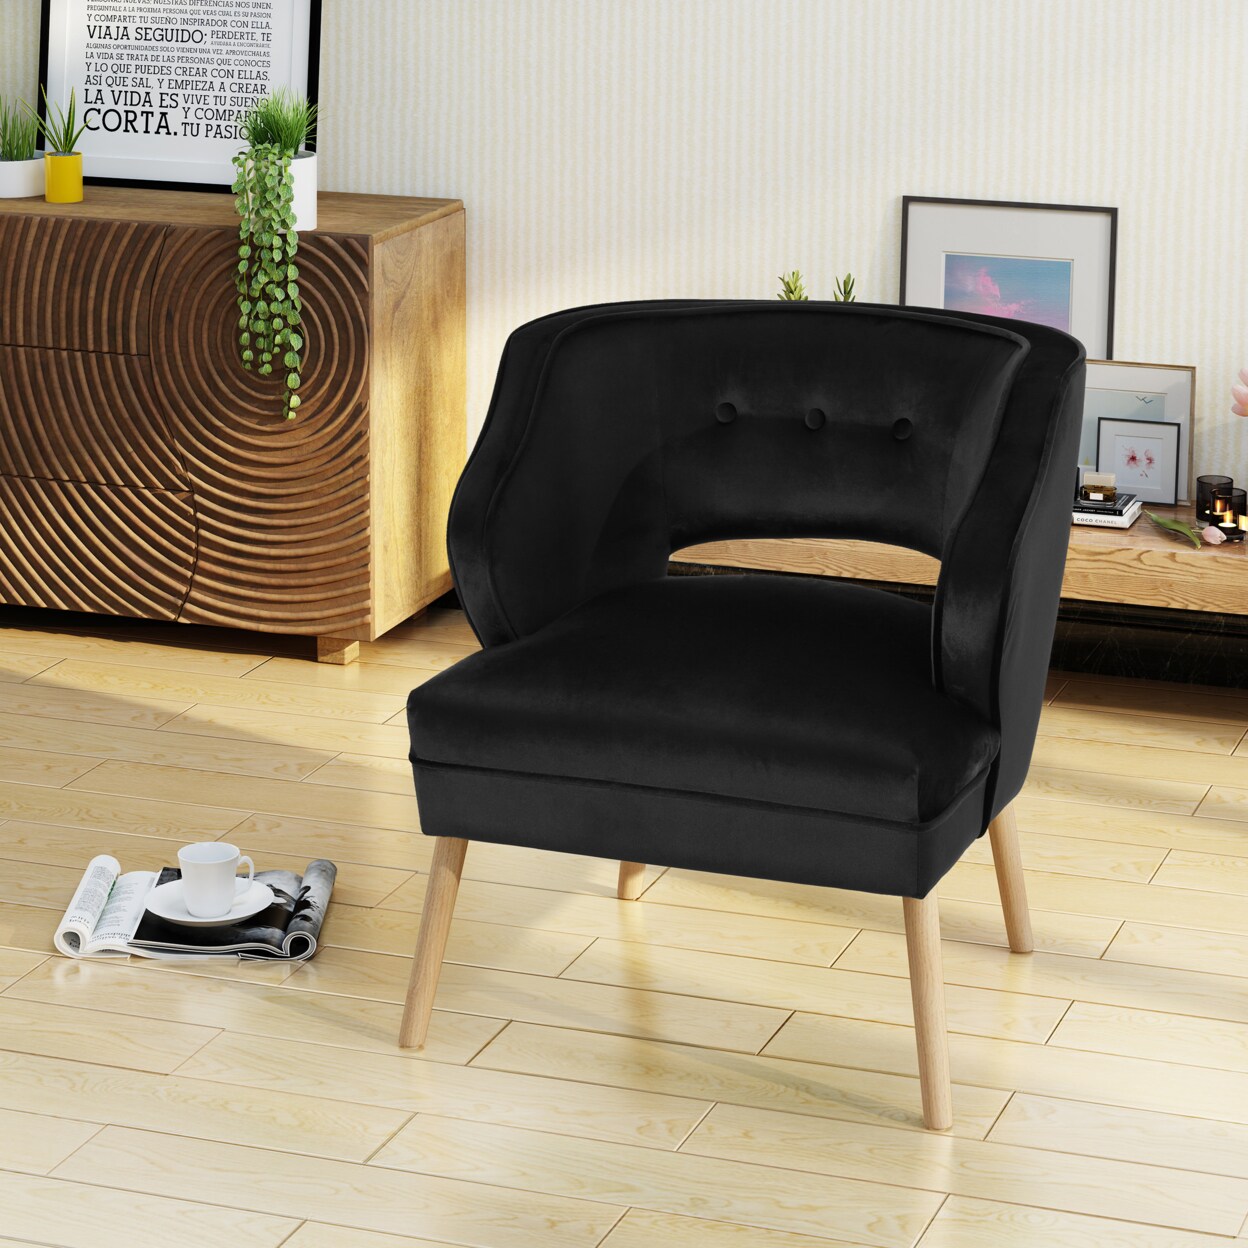 Bean Bag Chair/ Foam Sofa/ Lounge Chair/ Sleeper Couch/ Memory